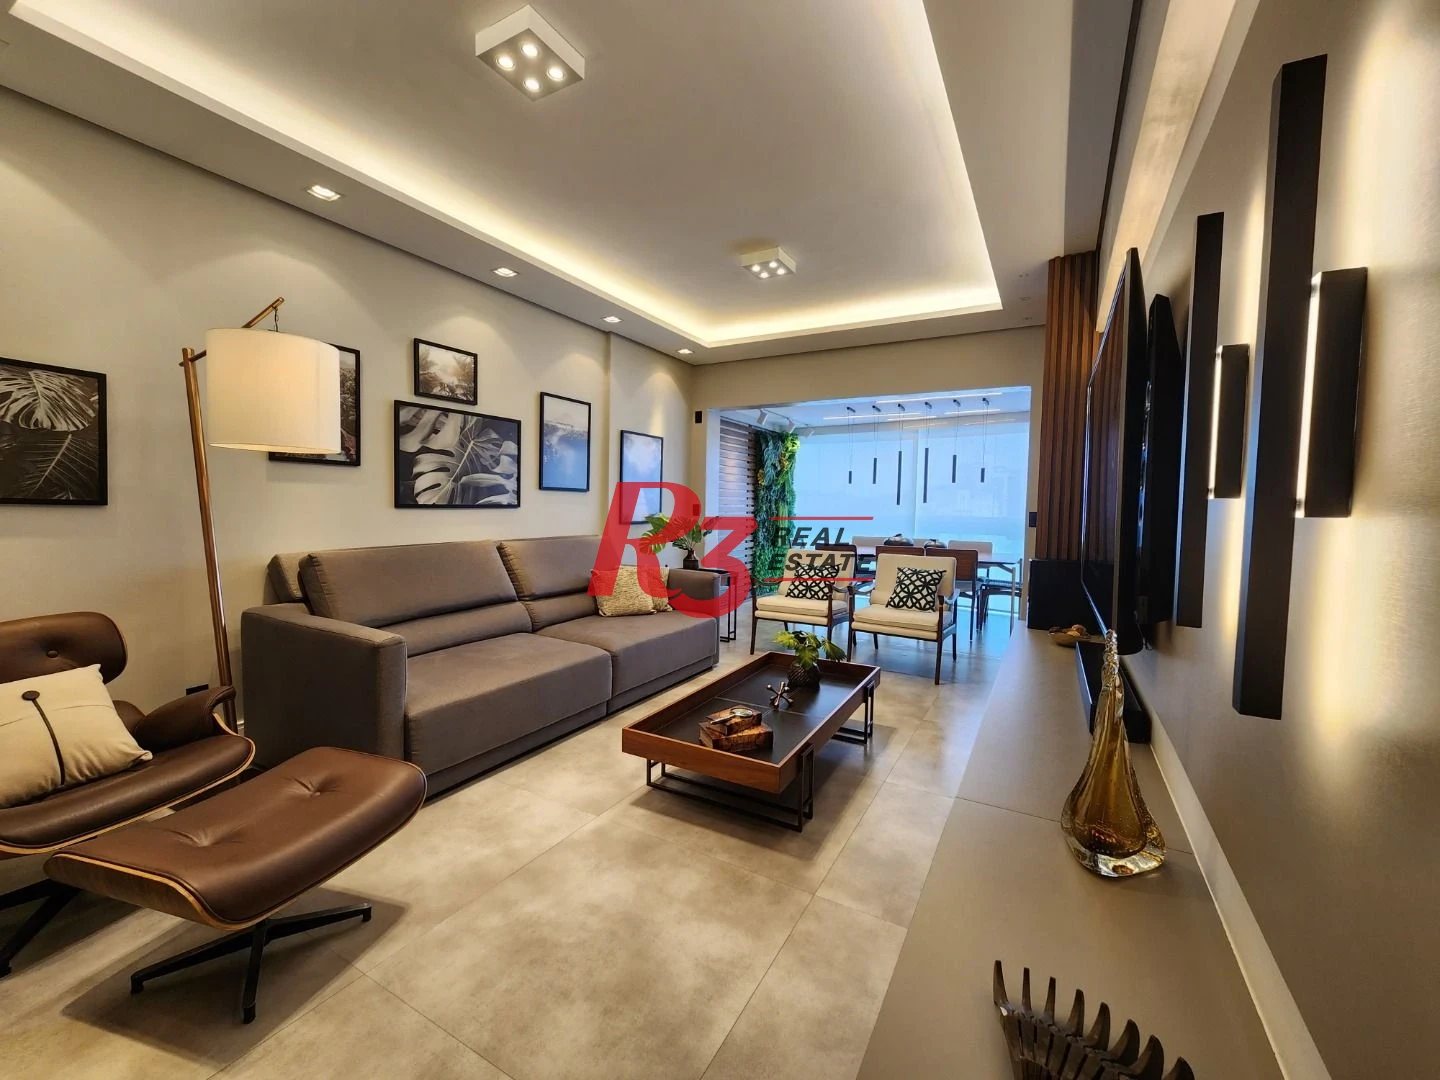 Apartamento à venda, 135 m² por R$ 2.400.000,00 - Ponta da Praia - Santos/SP